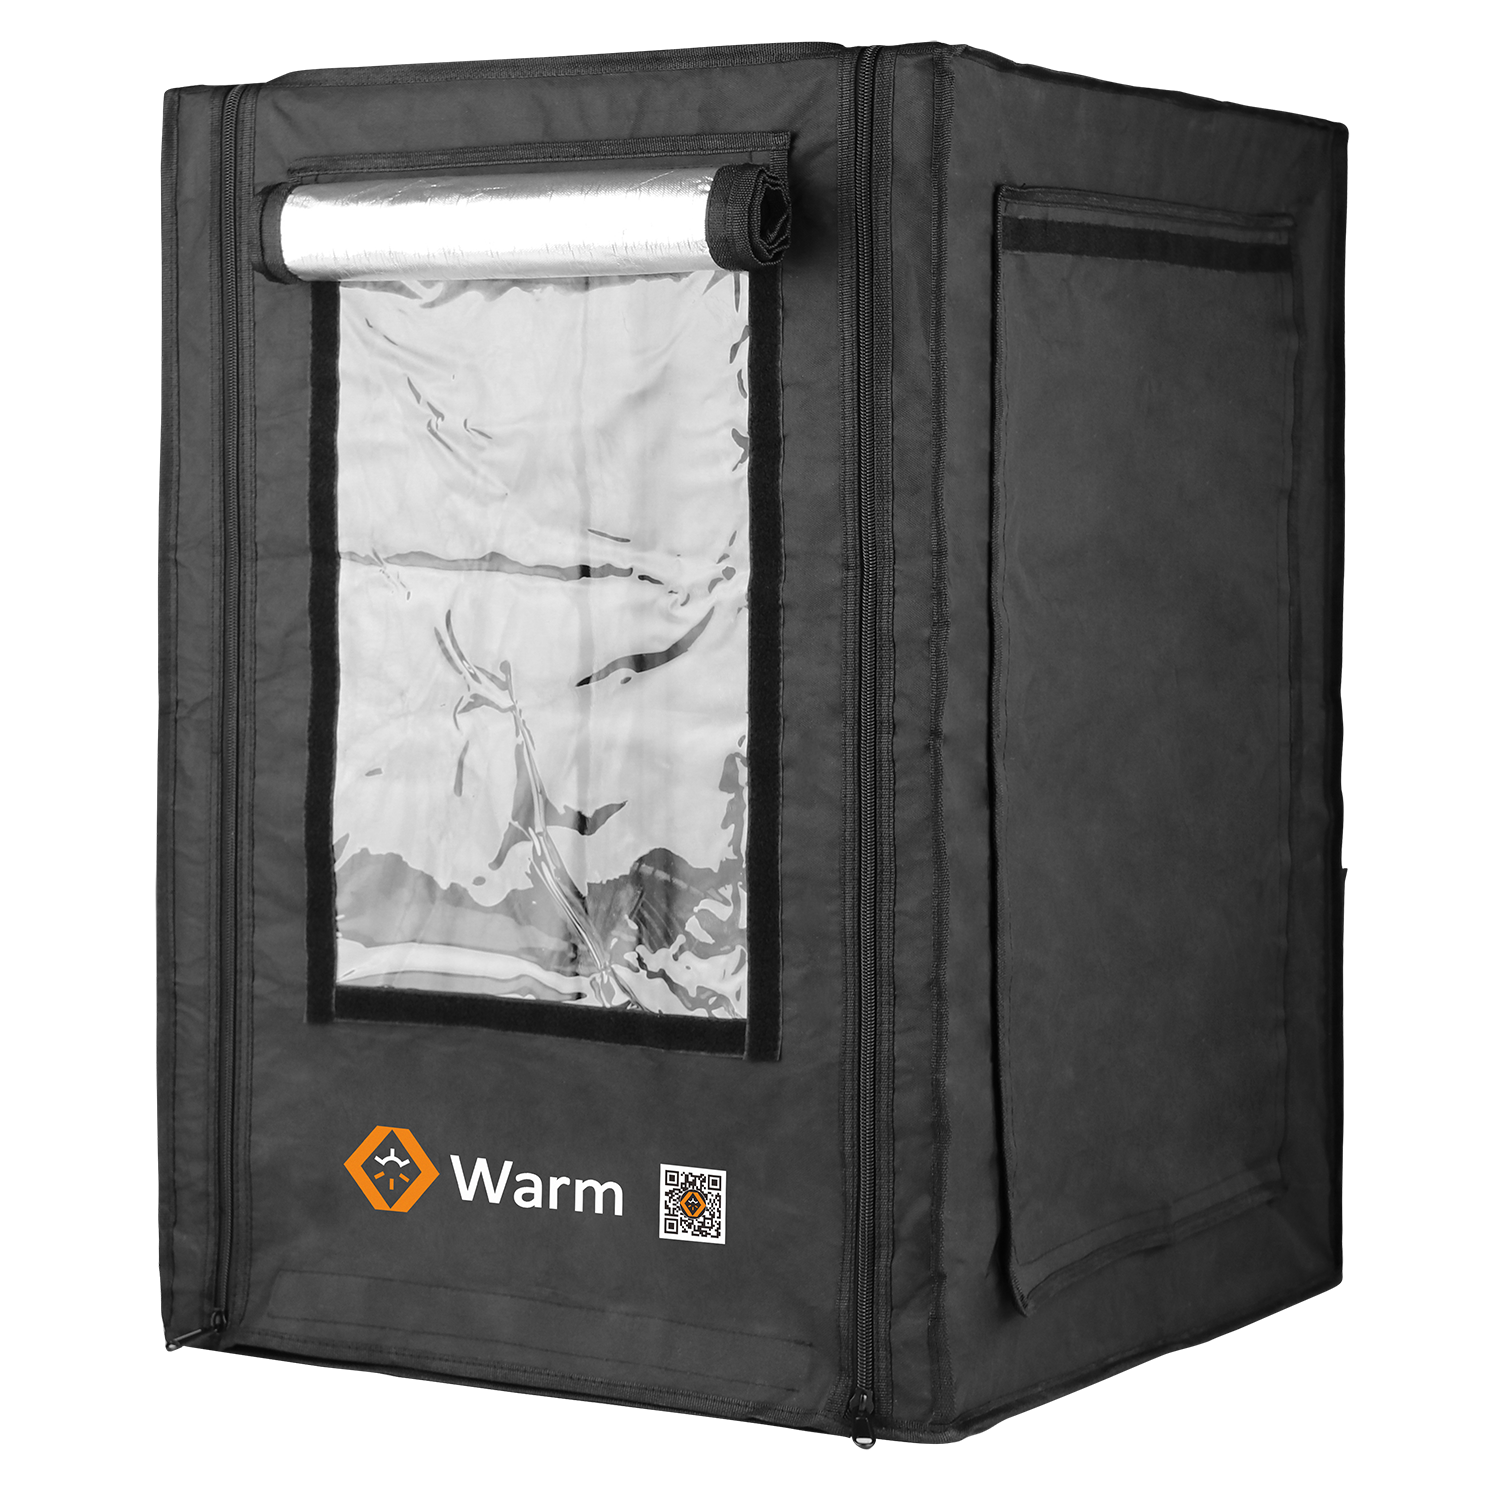 Gabinete de impresora Max 3D, Keep Warm, retardante de llama, cobertura total y un estudio, Warm Max
